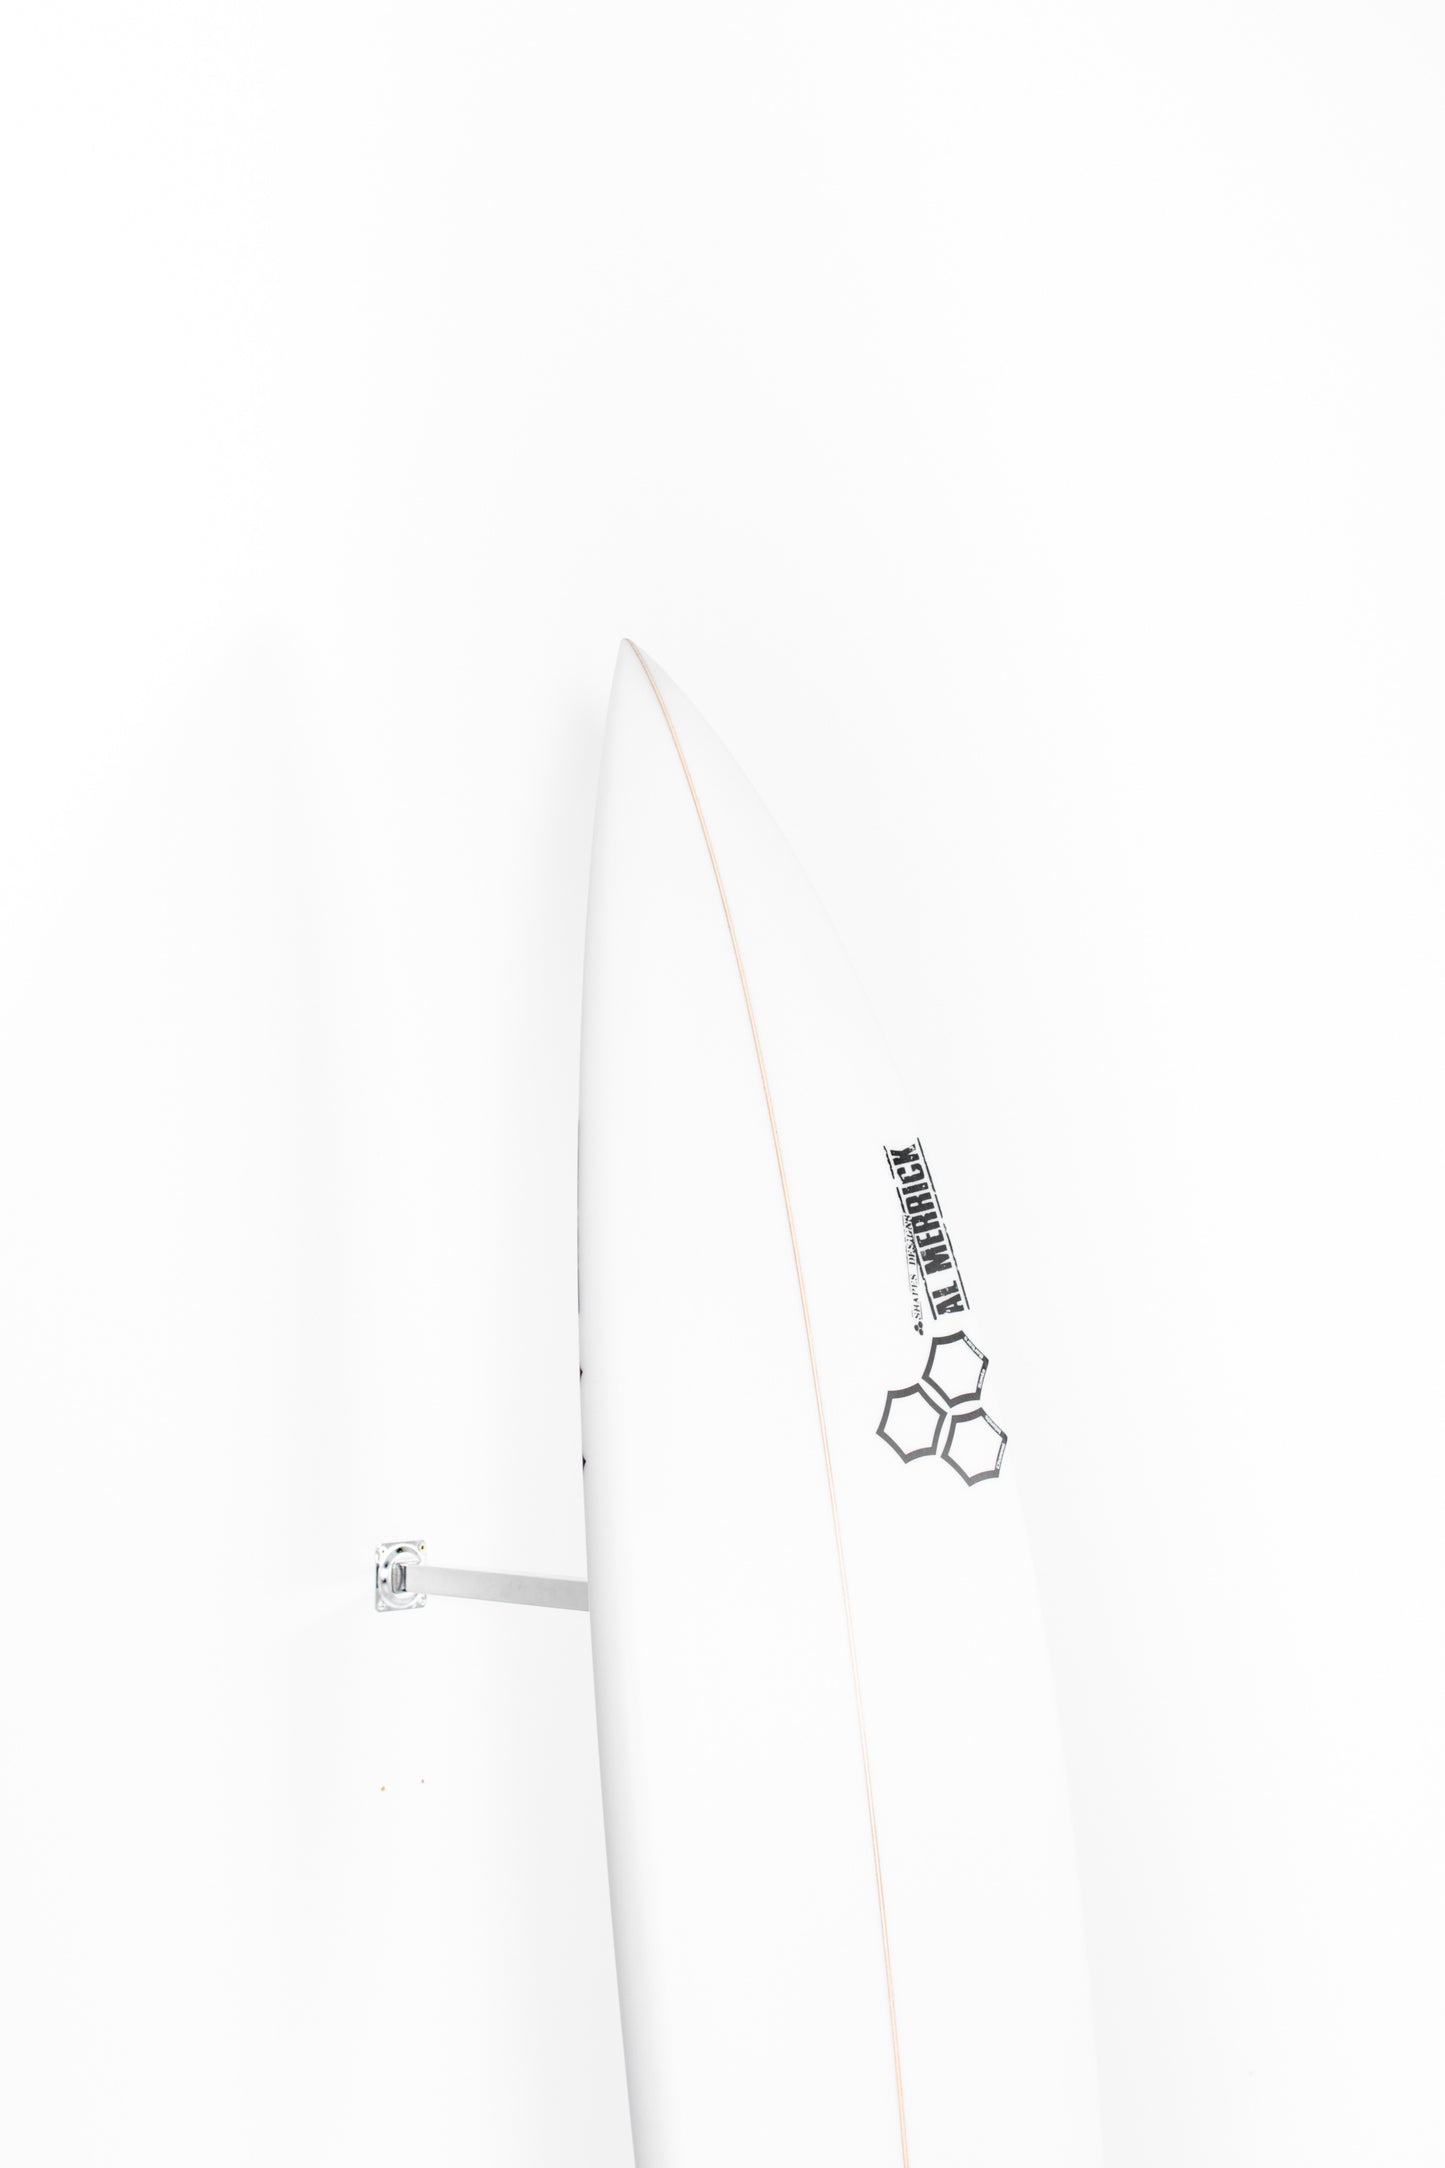 
                  
                    Pukas Surf Shop - Channel Islands - HAPPY TRAVELER by Al Merrick - 6’10” x 20 3/8 x 2 7/8 - 42,2L - CI17316
                  
                